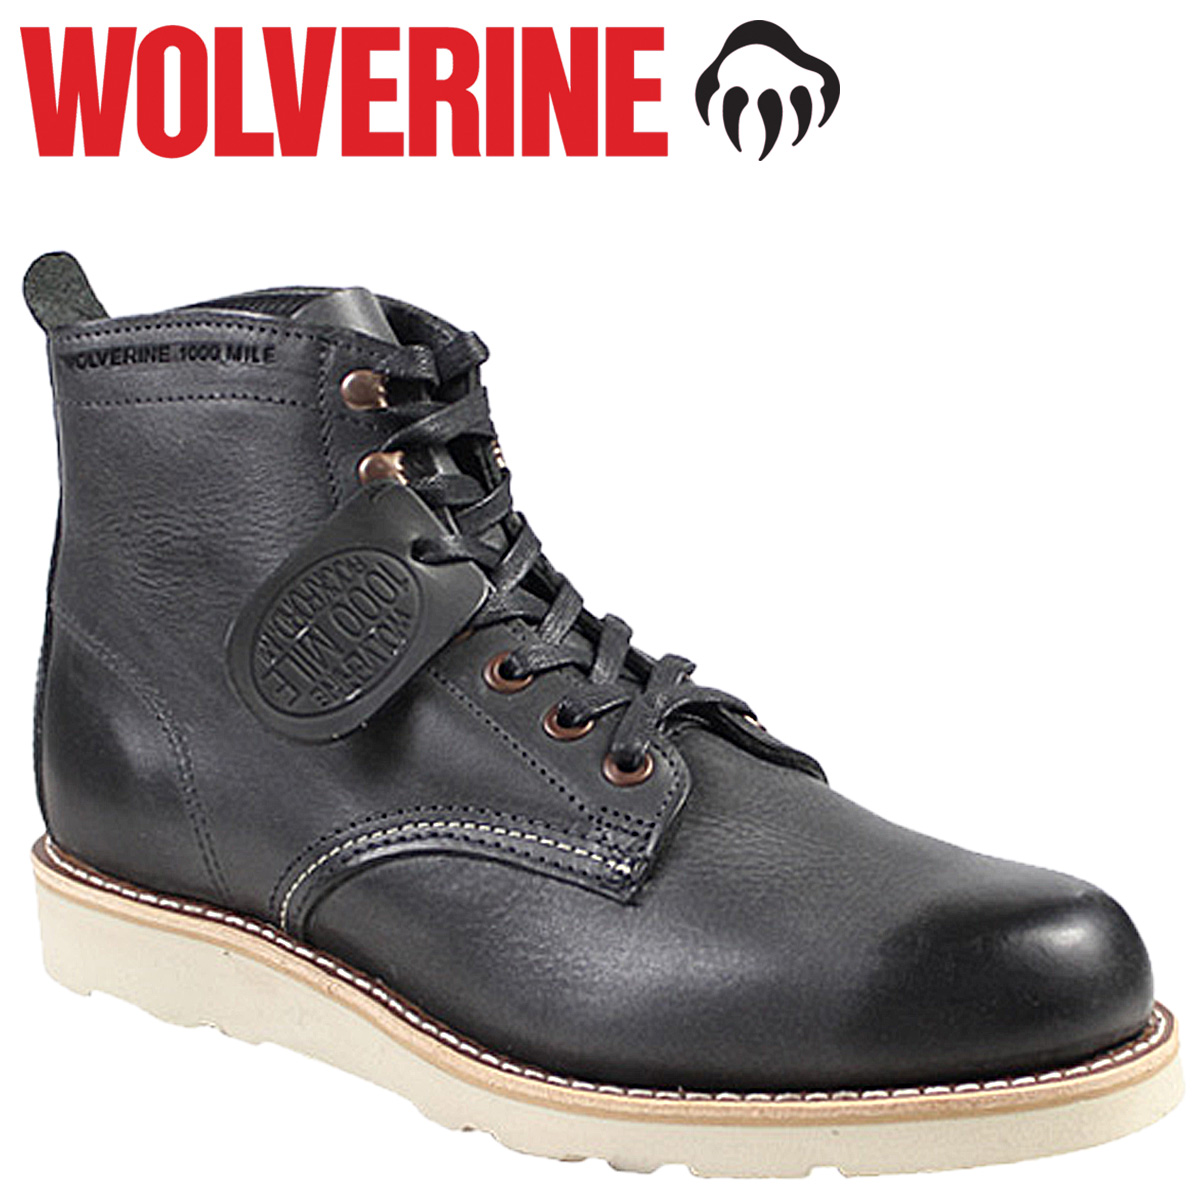 wolverine wedge sole steel toe